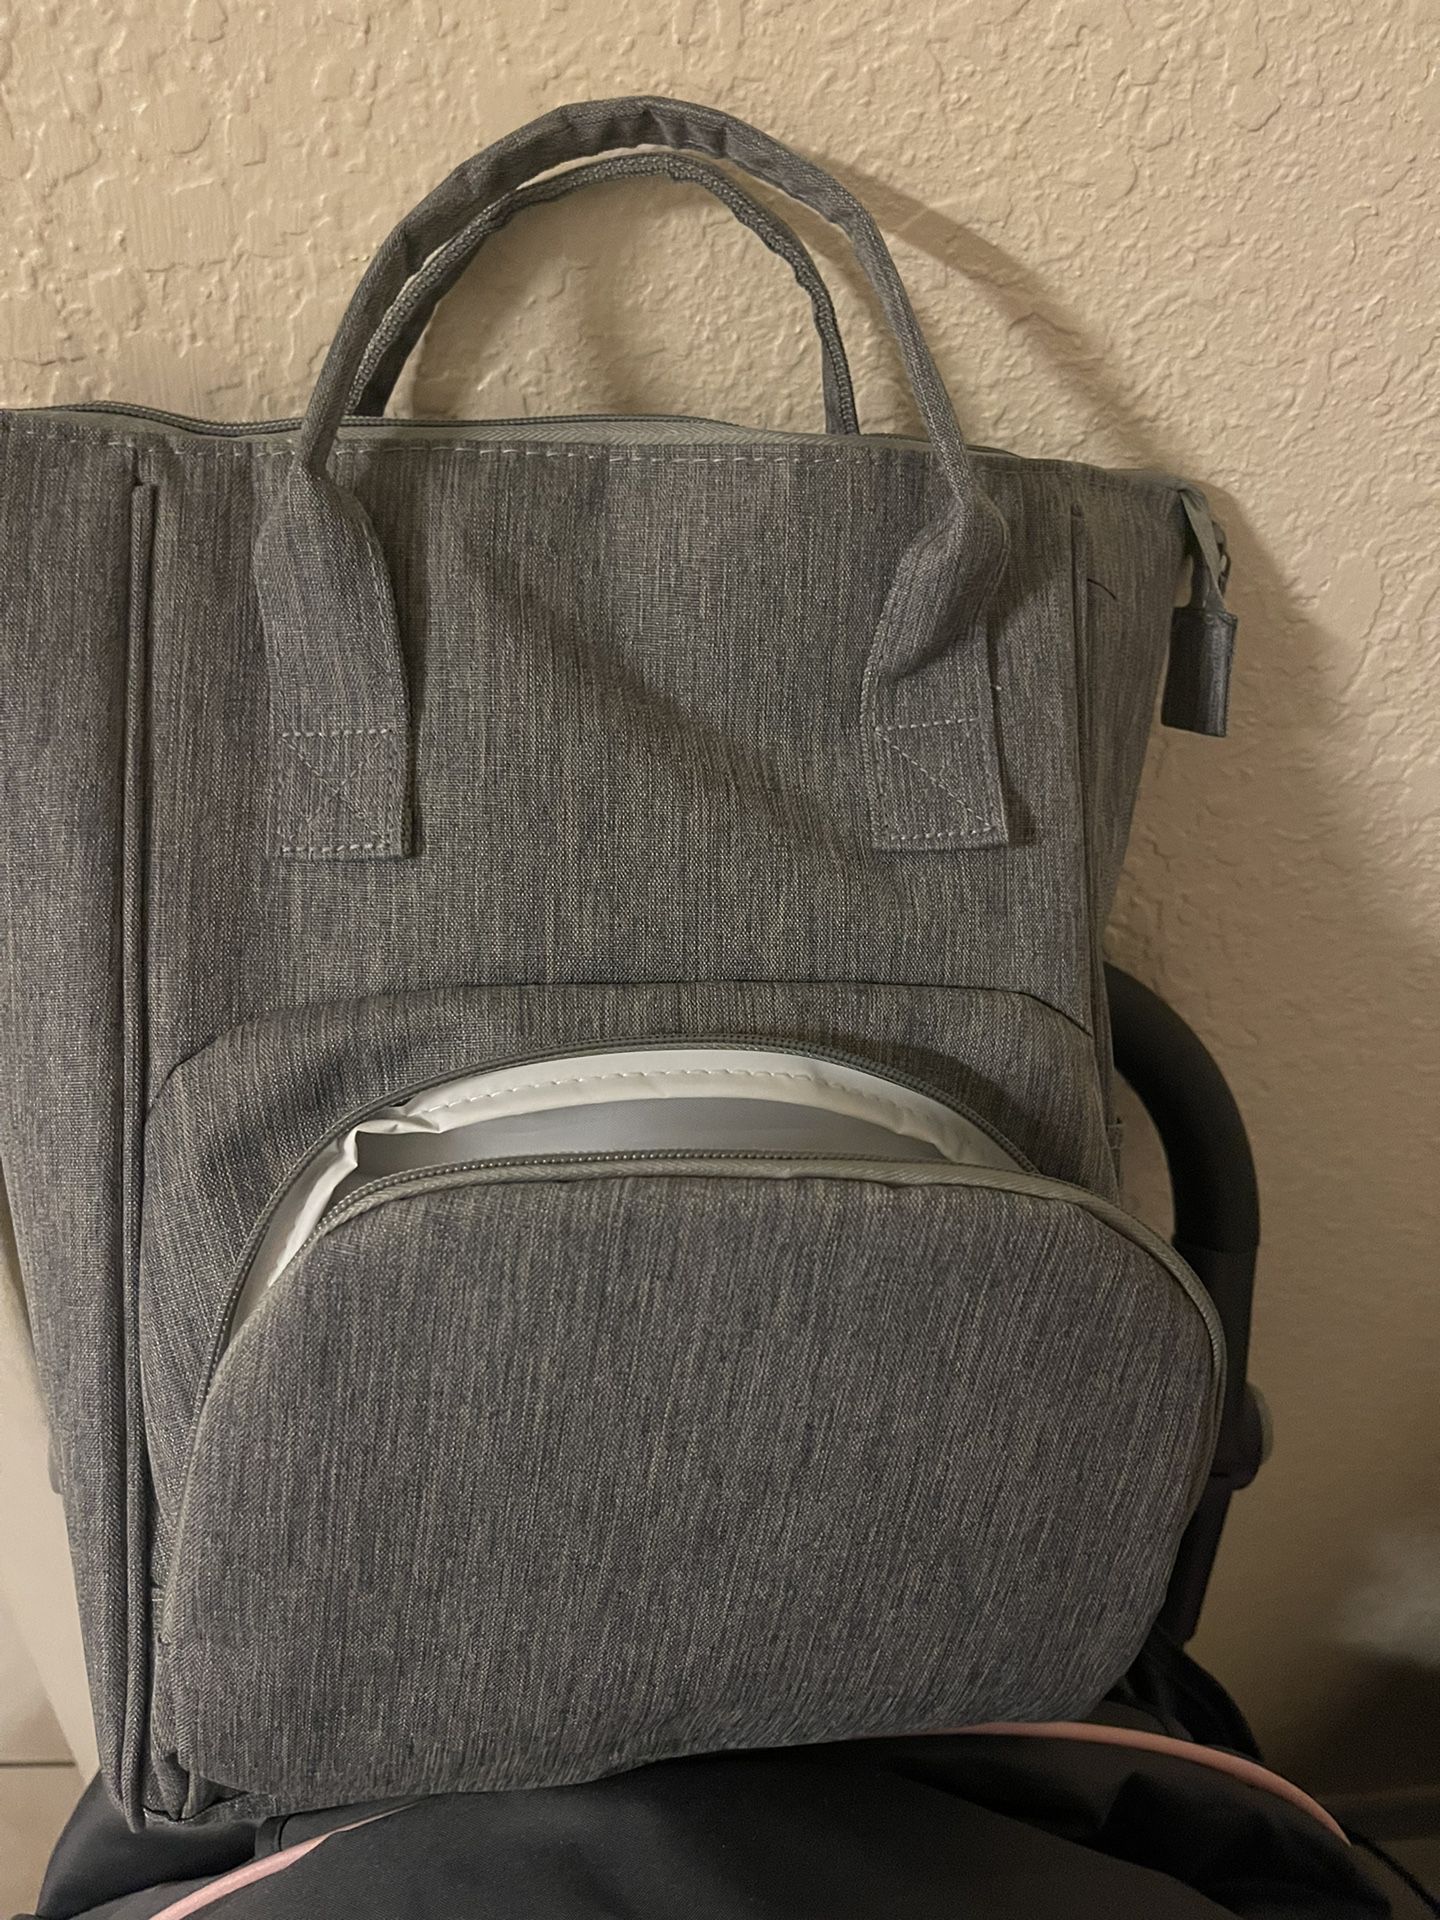 Wonderbag Diaper Bag Travel Backpack